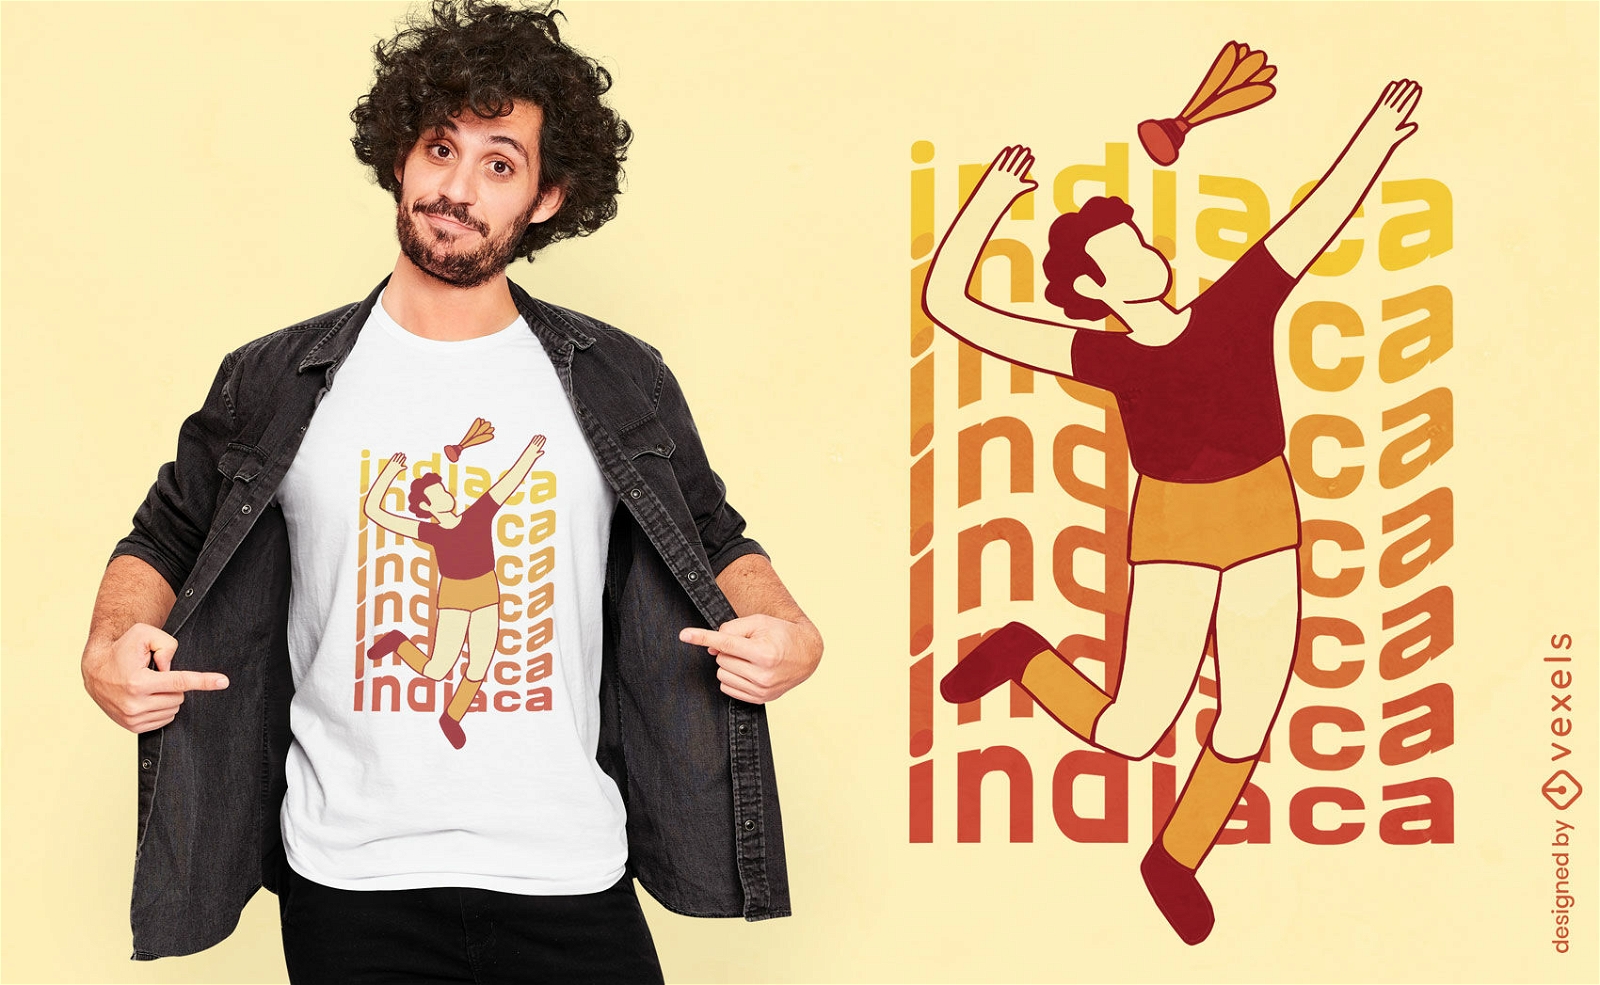 Diseño de camiseta de jugador de Indiaca